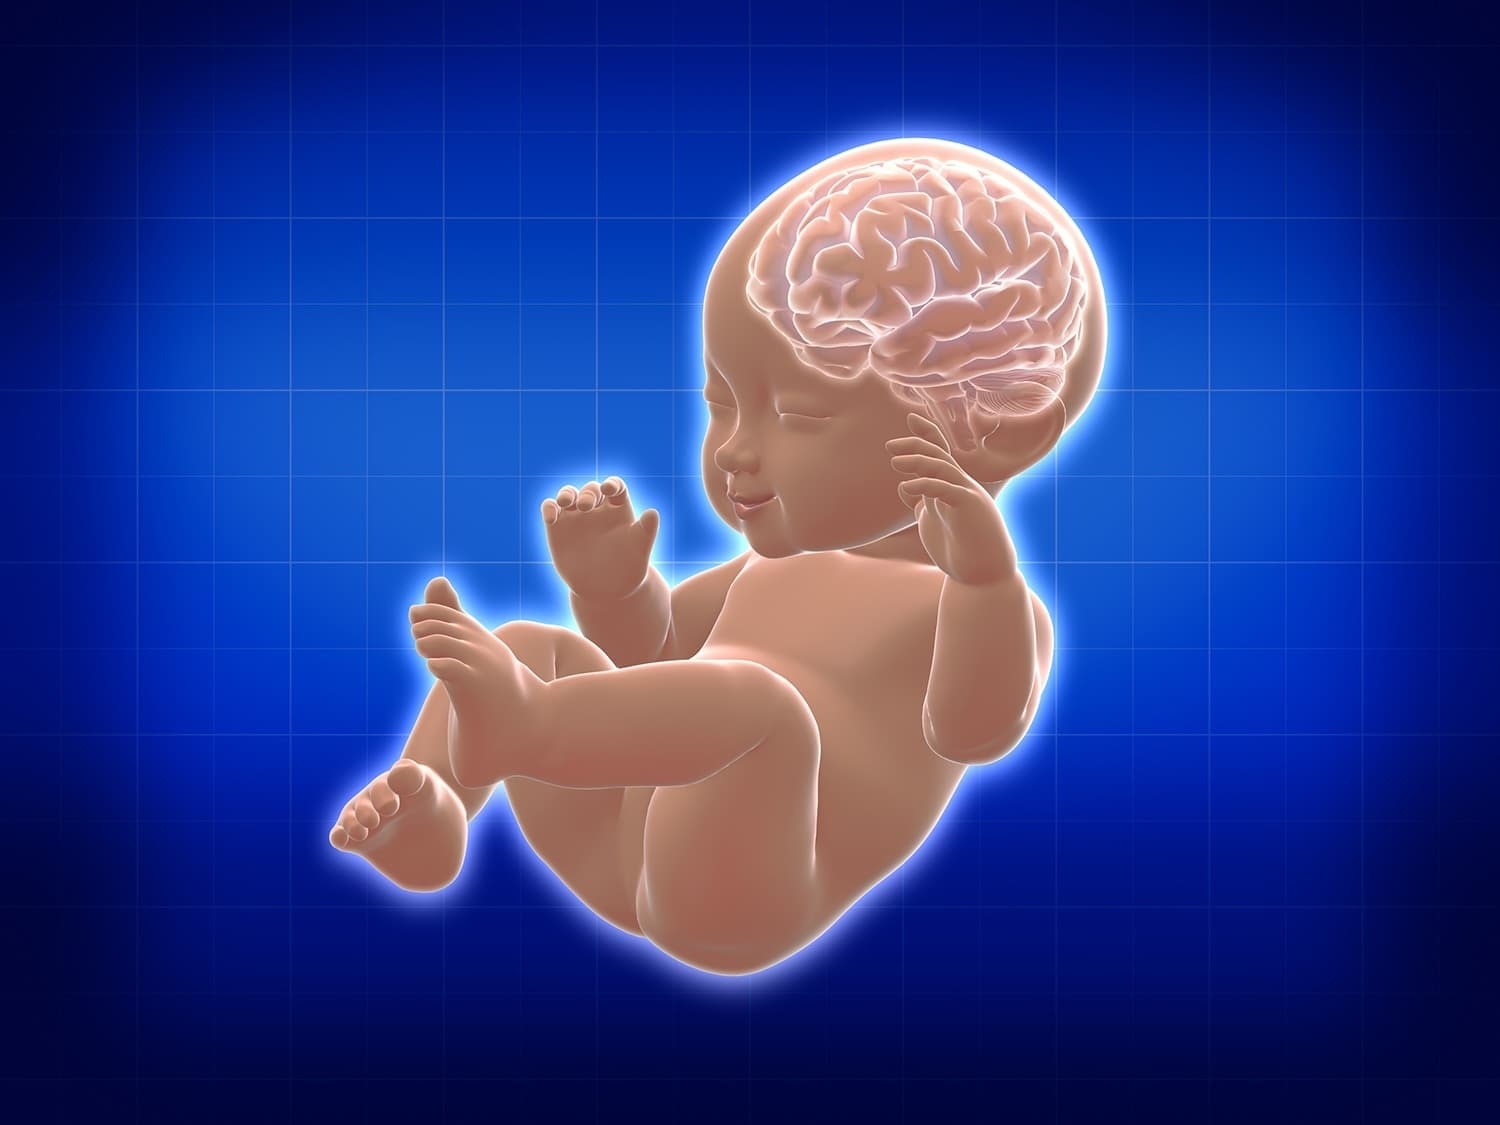 วิธีเลี้ยงลูกให้ฉลาด ความจำดี มีพัฒนาสมองที่สมวัยตั้งแต่แรกเกิด - 6 ขวบ